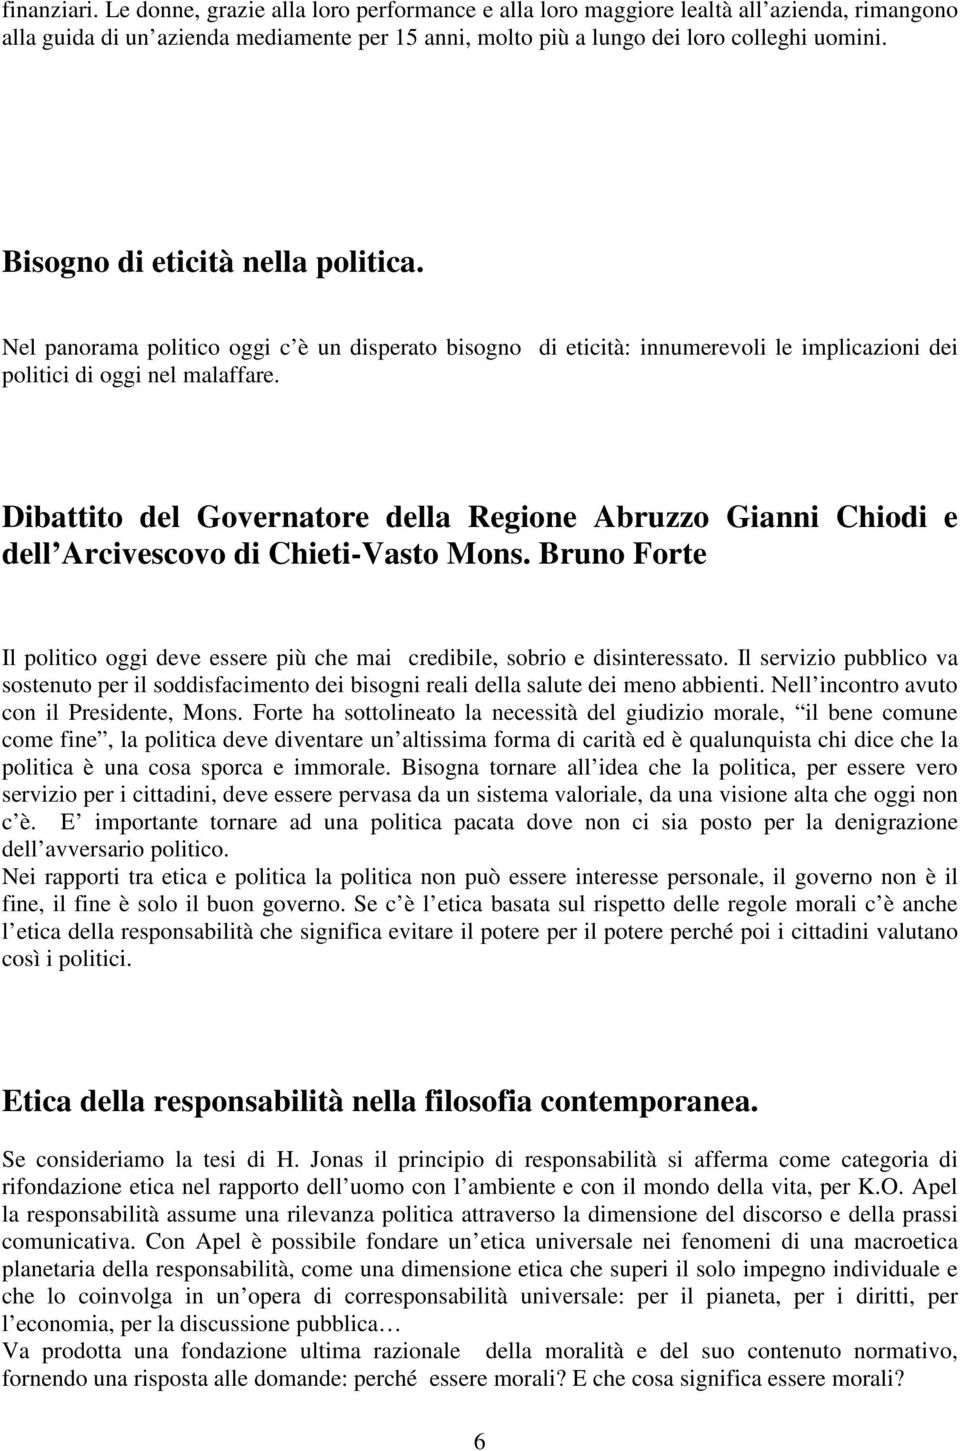 Dibattito del Governatore della Regione Abruzzo Gianni Chiodi e dell Arcivescovo di Chieti-Vasto Mons. Bruno Forte Il politico oggi deve essere più che mai credibile, sobrio e disinteressato.